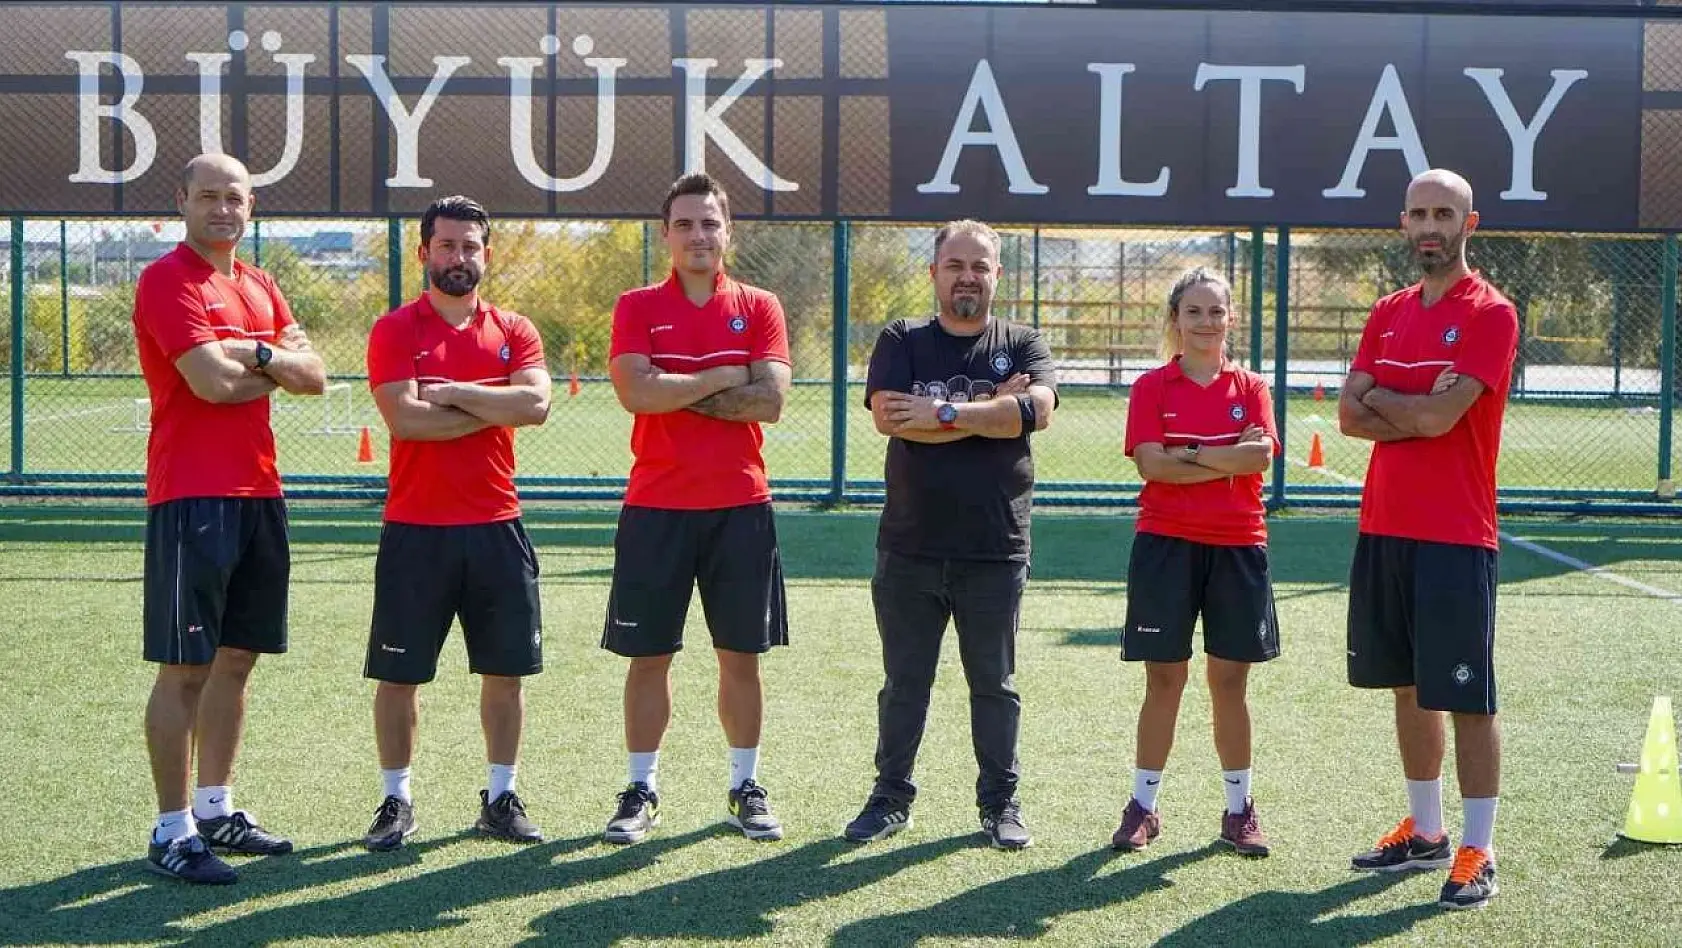 Büyük Altay Futbol Akademisi genç yetenekleri bekliyor